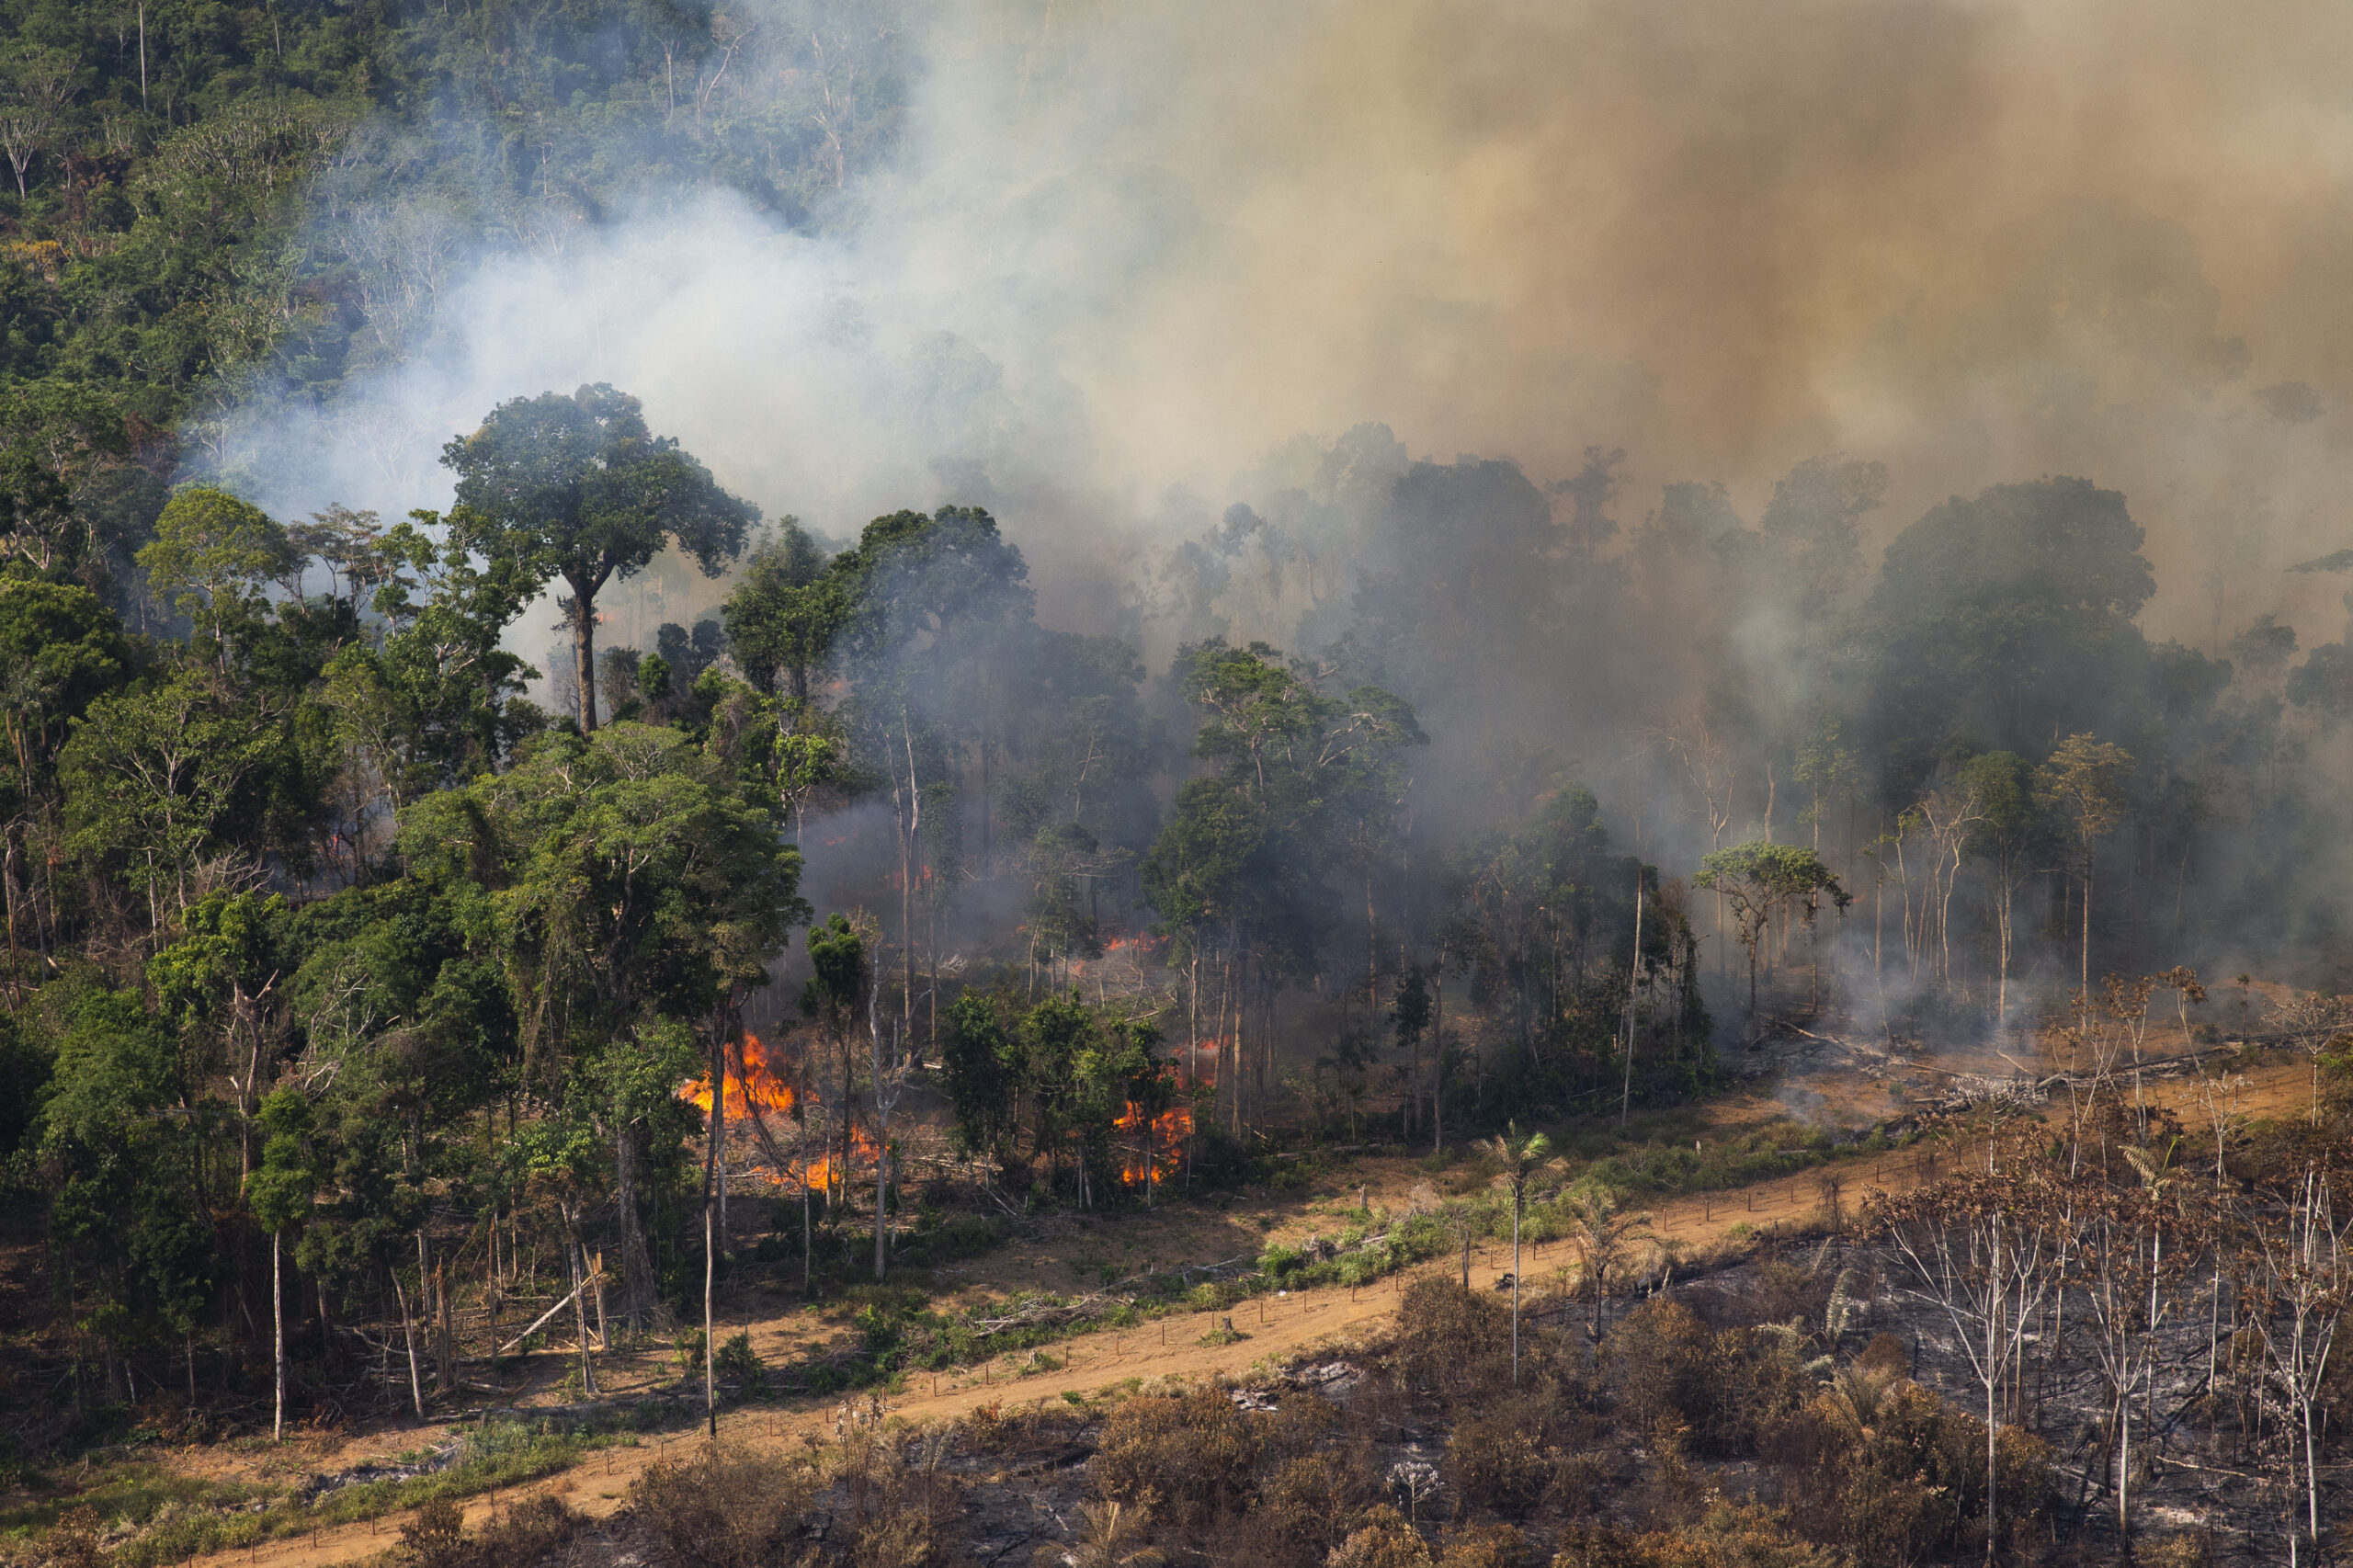 Fumaça de incêndios florestais causa mais de 12 mil mortes prematuras ao ano